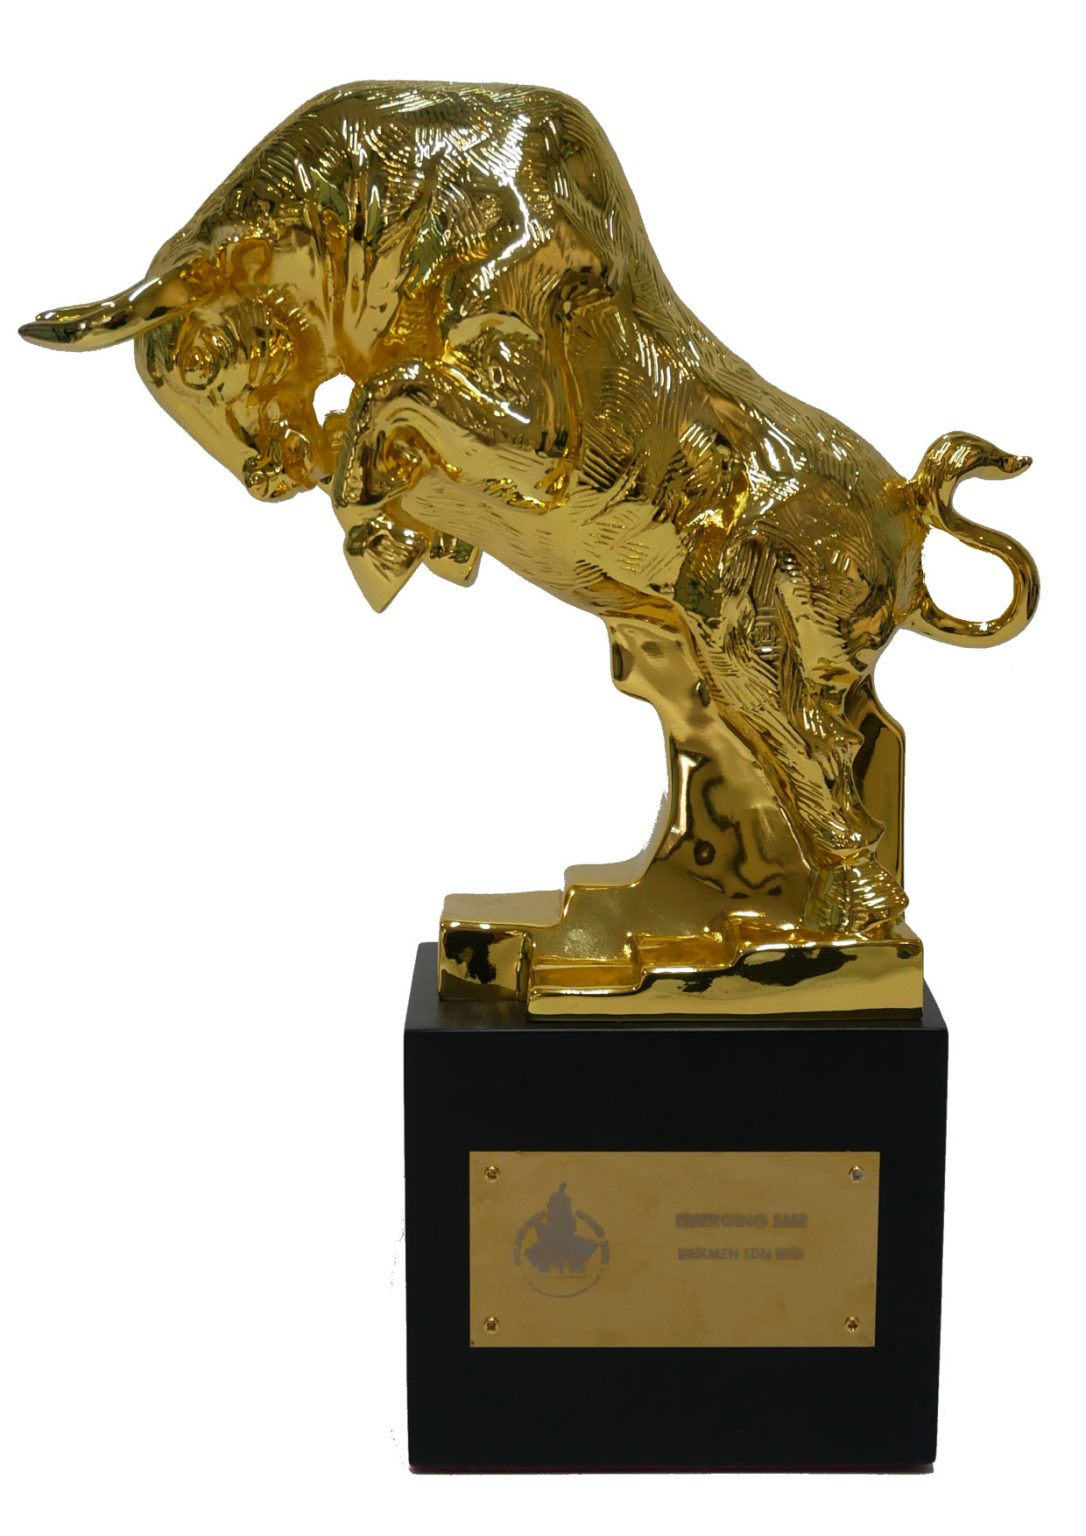 Golden Bull Award
Emerging SME Awards
Year 2021